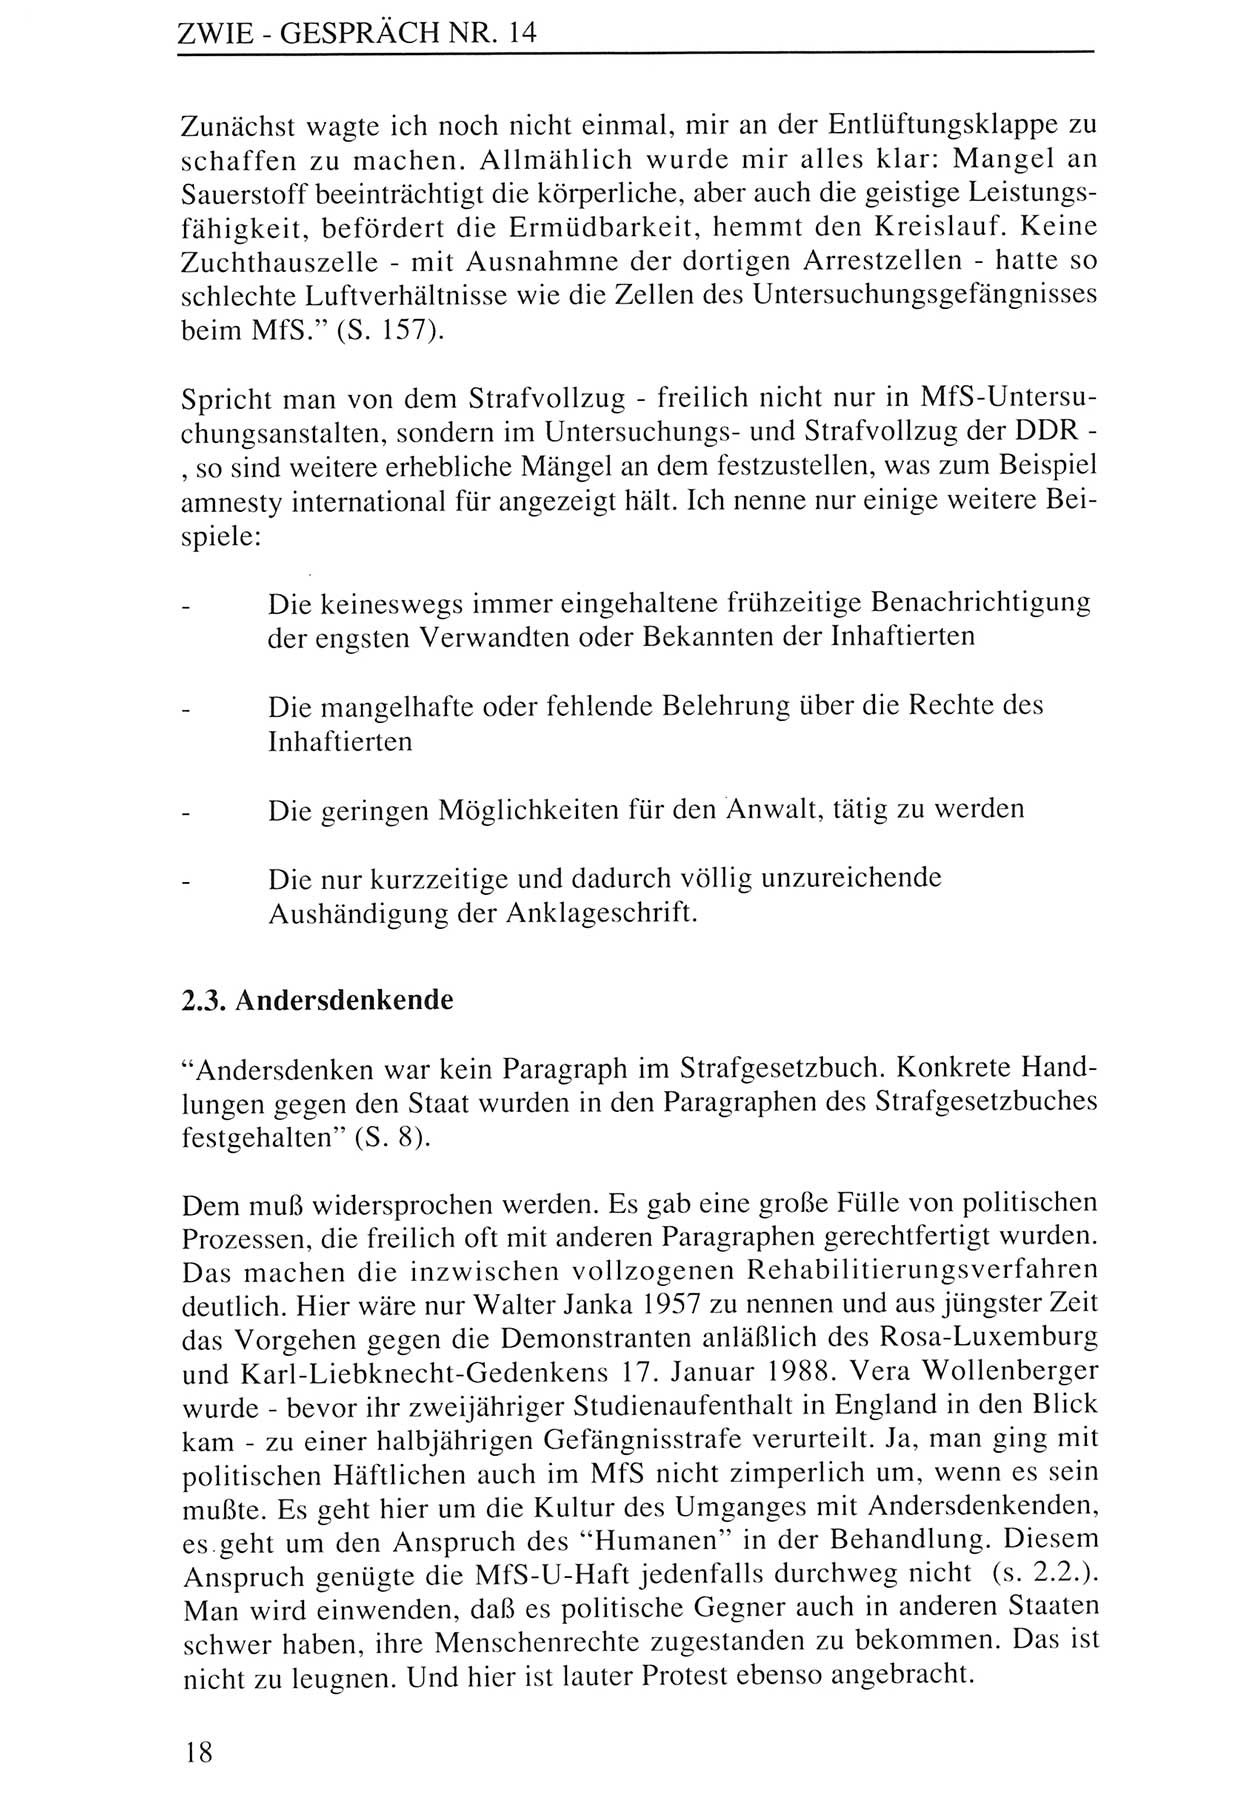 Zwie-GesprÃ¤ch, BeitrÃ¤ge zur Aufarbeitung der Staatssicherheits-Vergangenheit [Deutsche Demokratische Republik (DDR)], Ausgabe Nr. 14, Berlin 1993, Seite 18 (Zwie-Gespr. Ausg. 14 1993, S. 18)